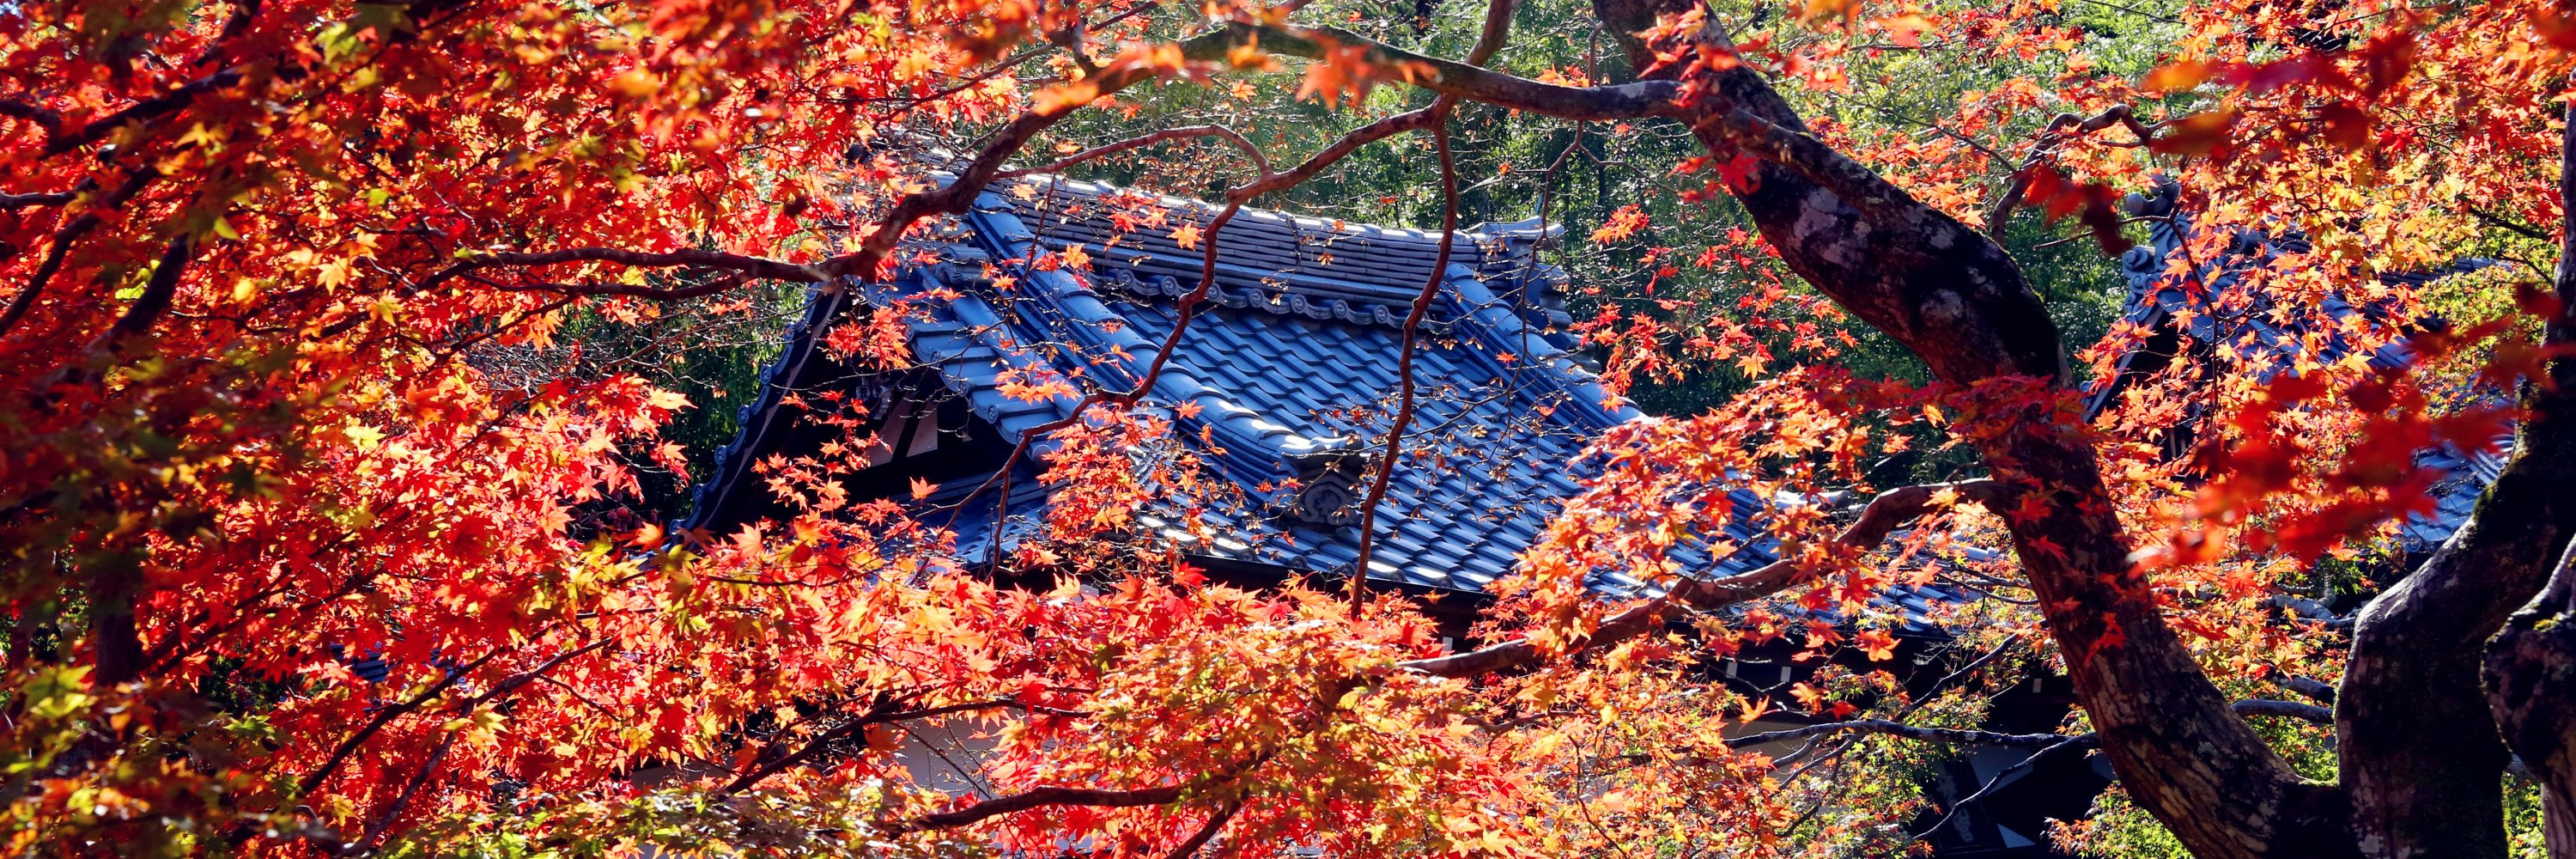 漫步京都红叶季 旅游攻略 马蜂窝